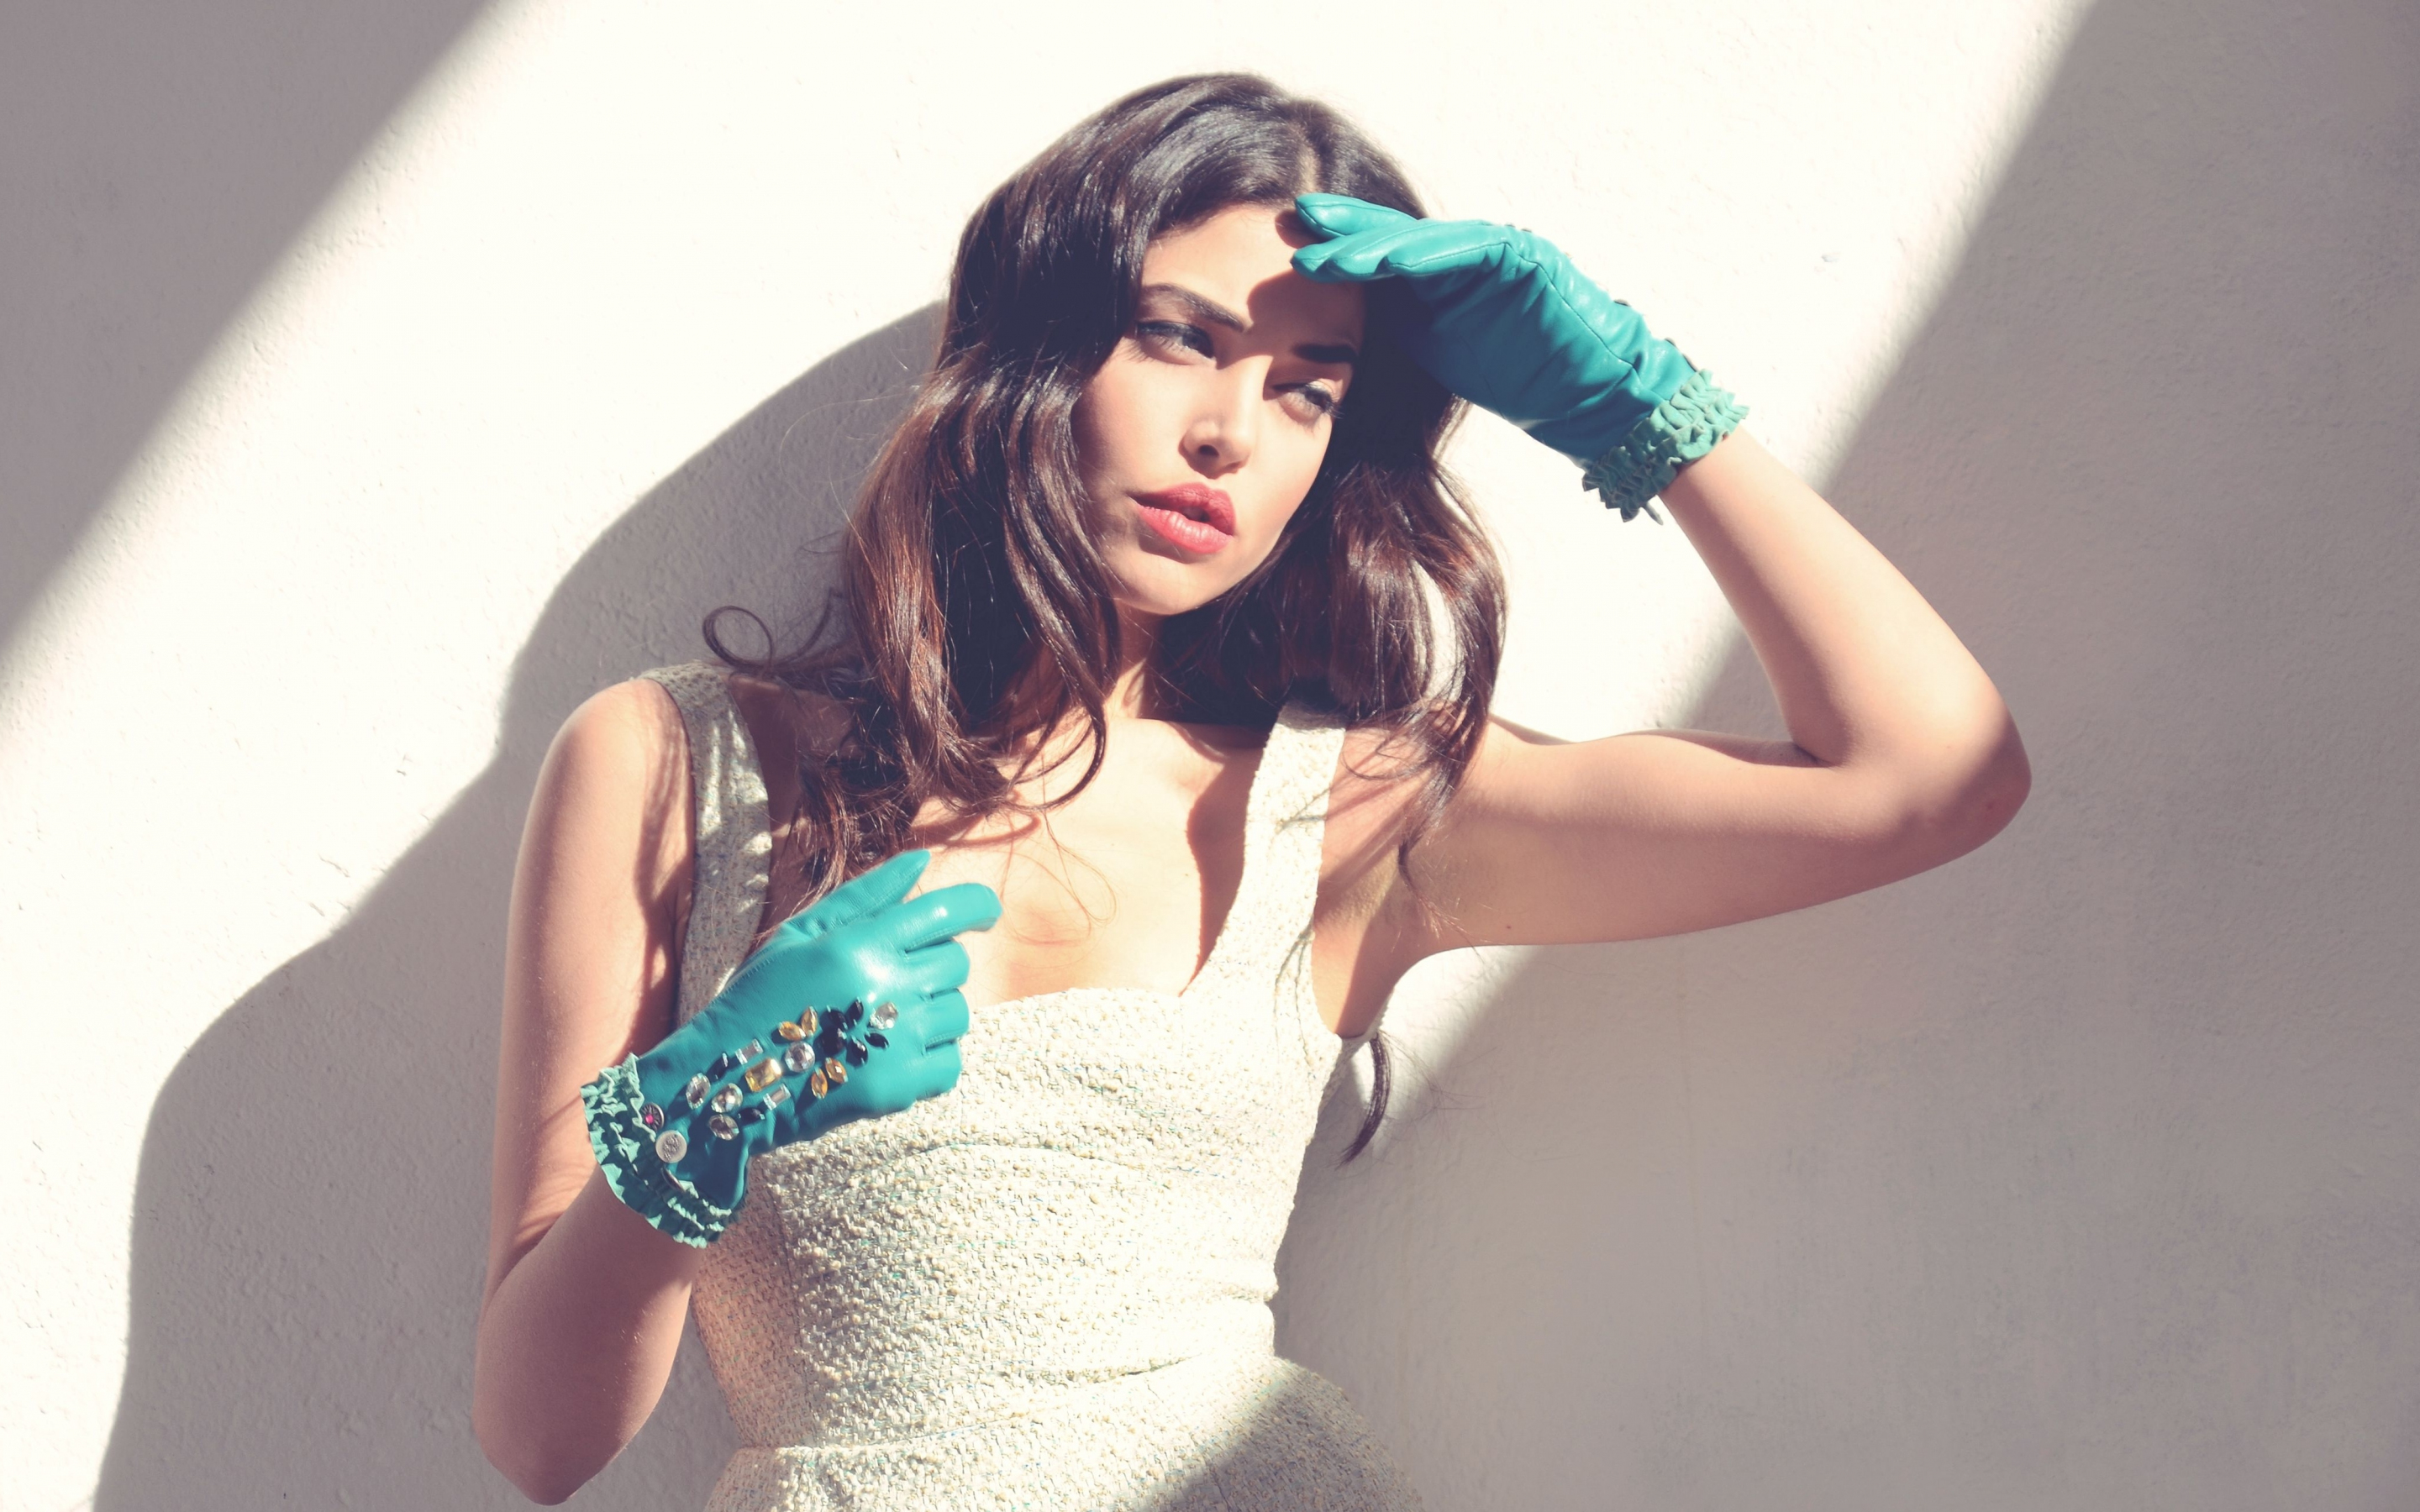 Girl model, blue gloves, hot, white dress, 2880x1800 wallpaper